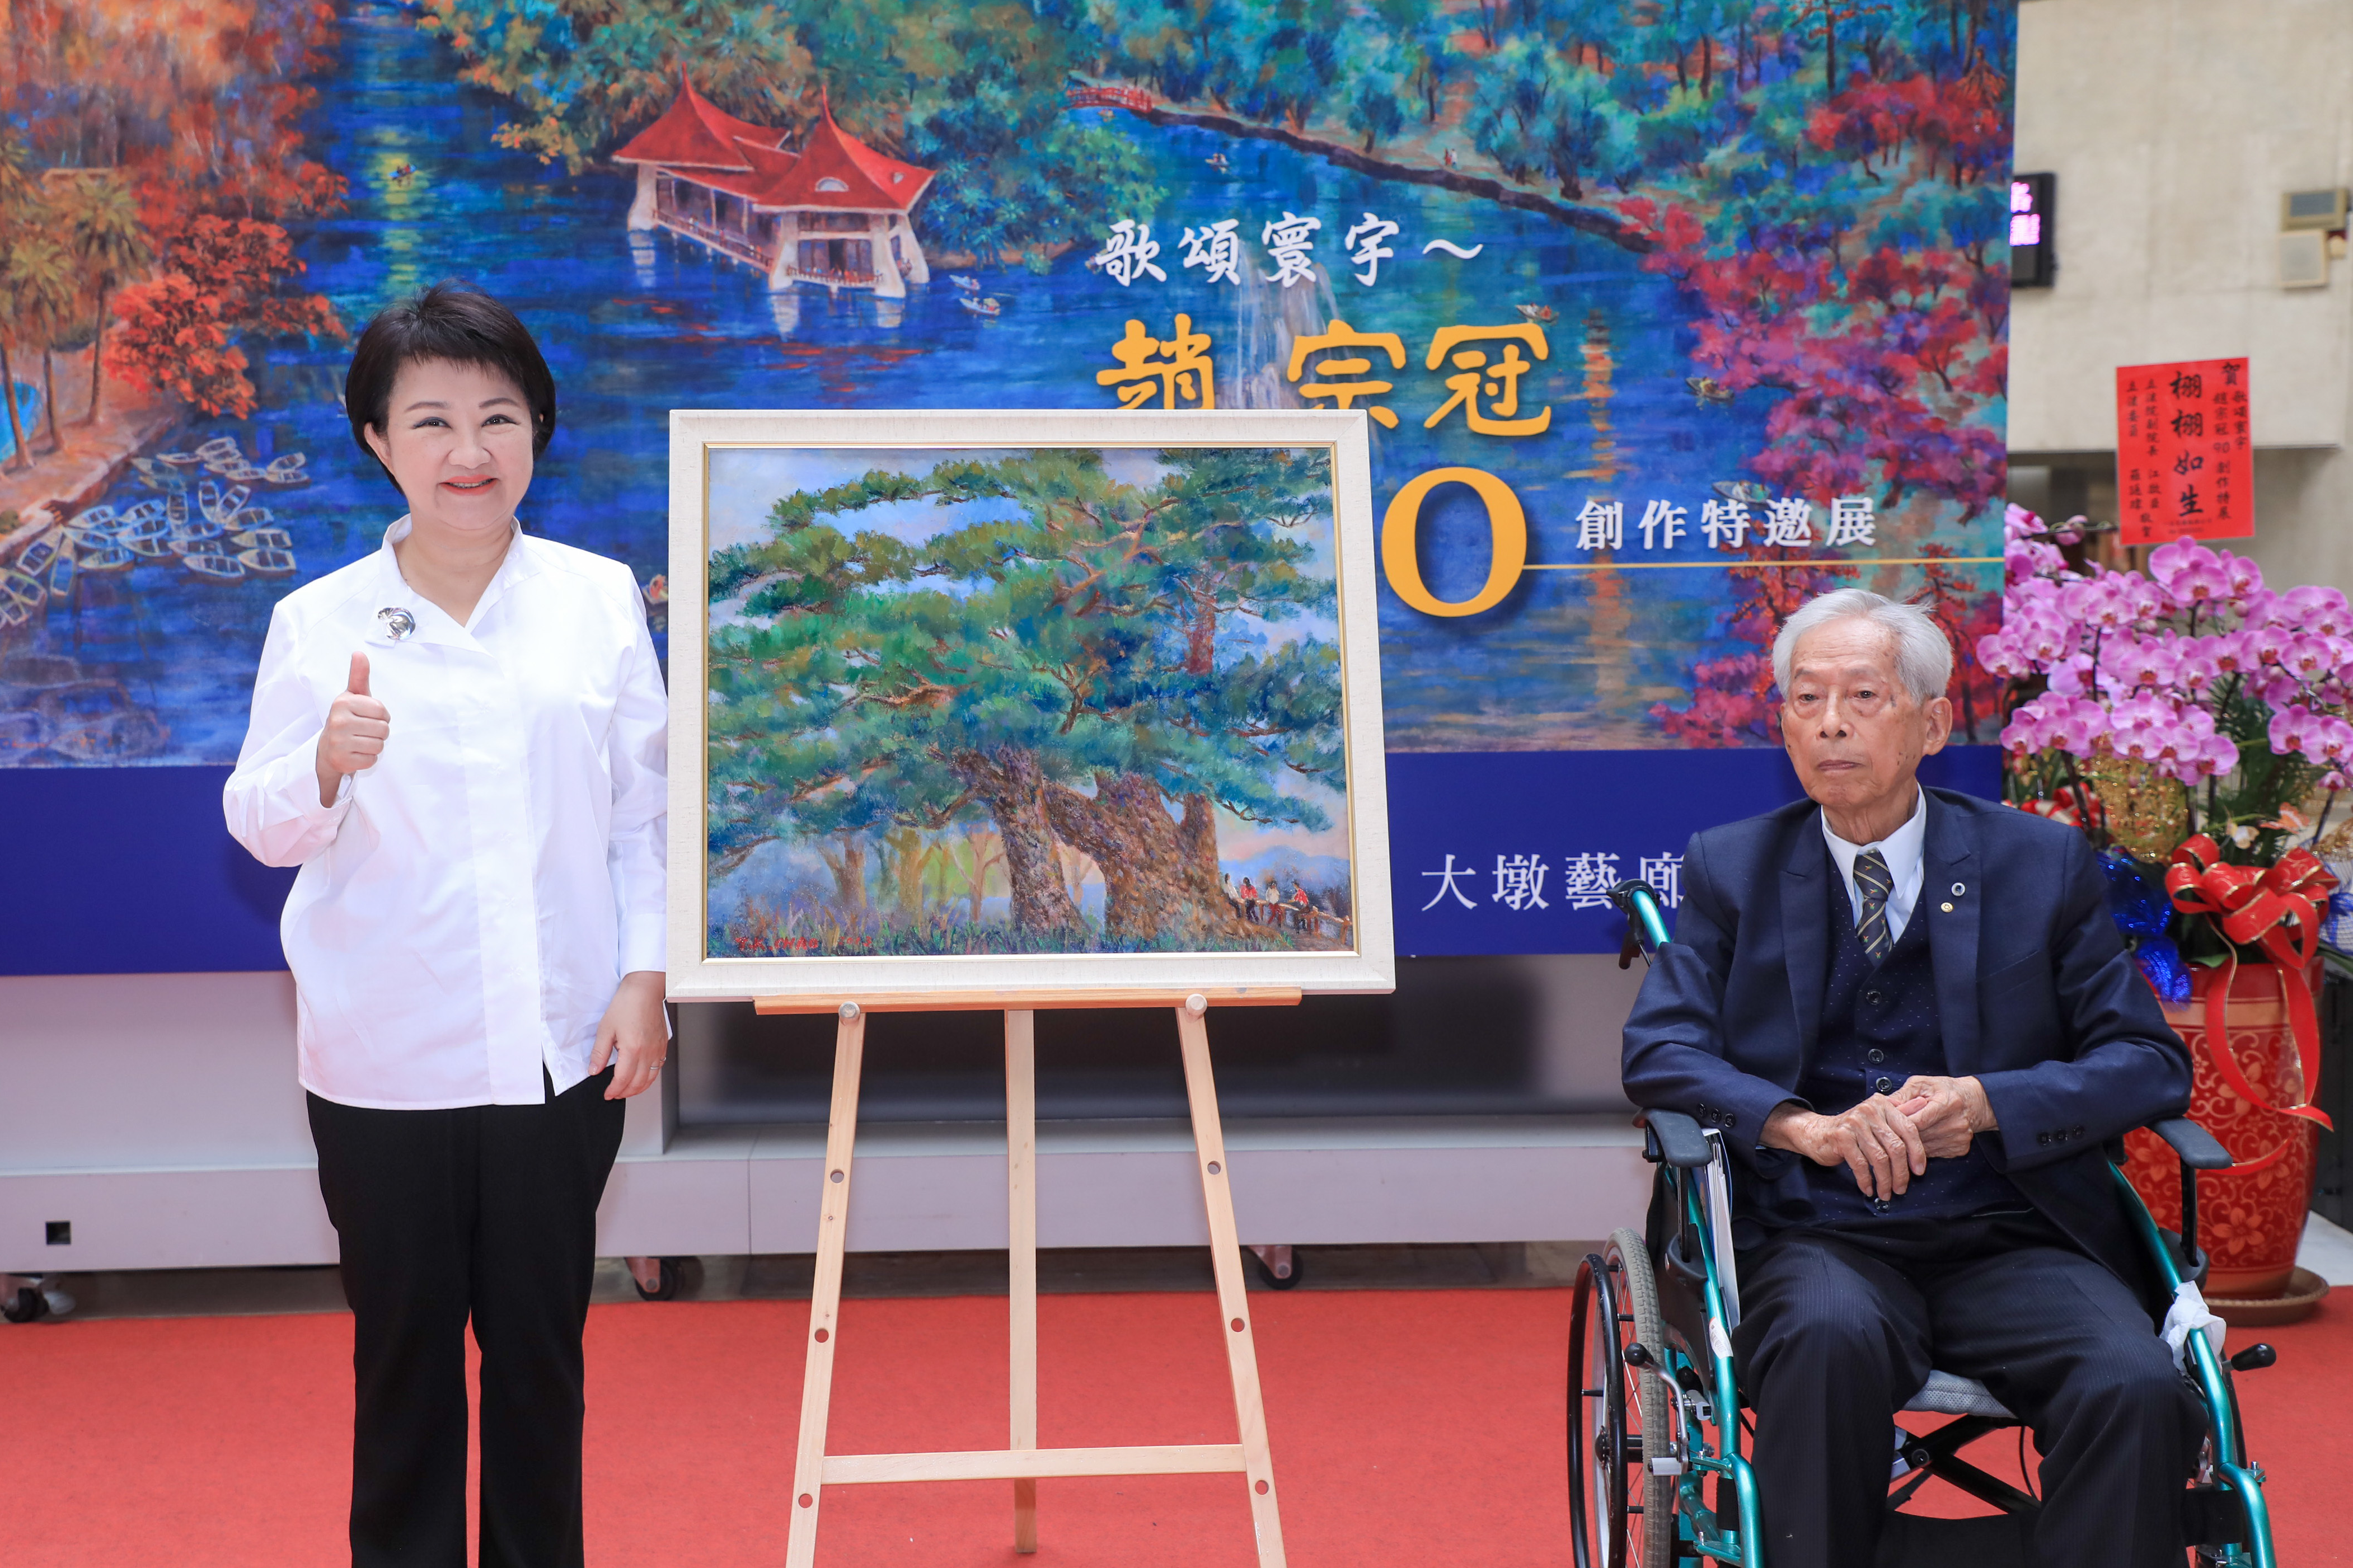 市長盧秀燕出席開幕式並感謝趙宗冠博士慷慨捐贈典藏作品。